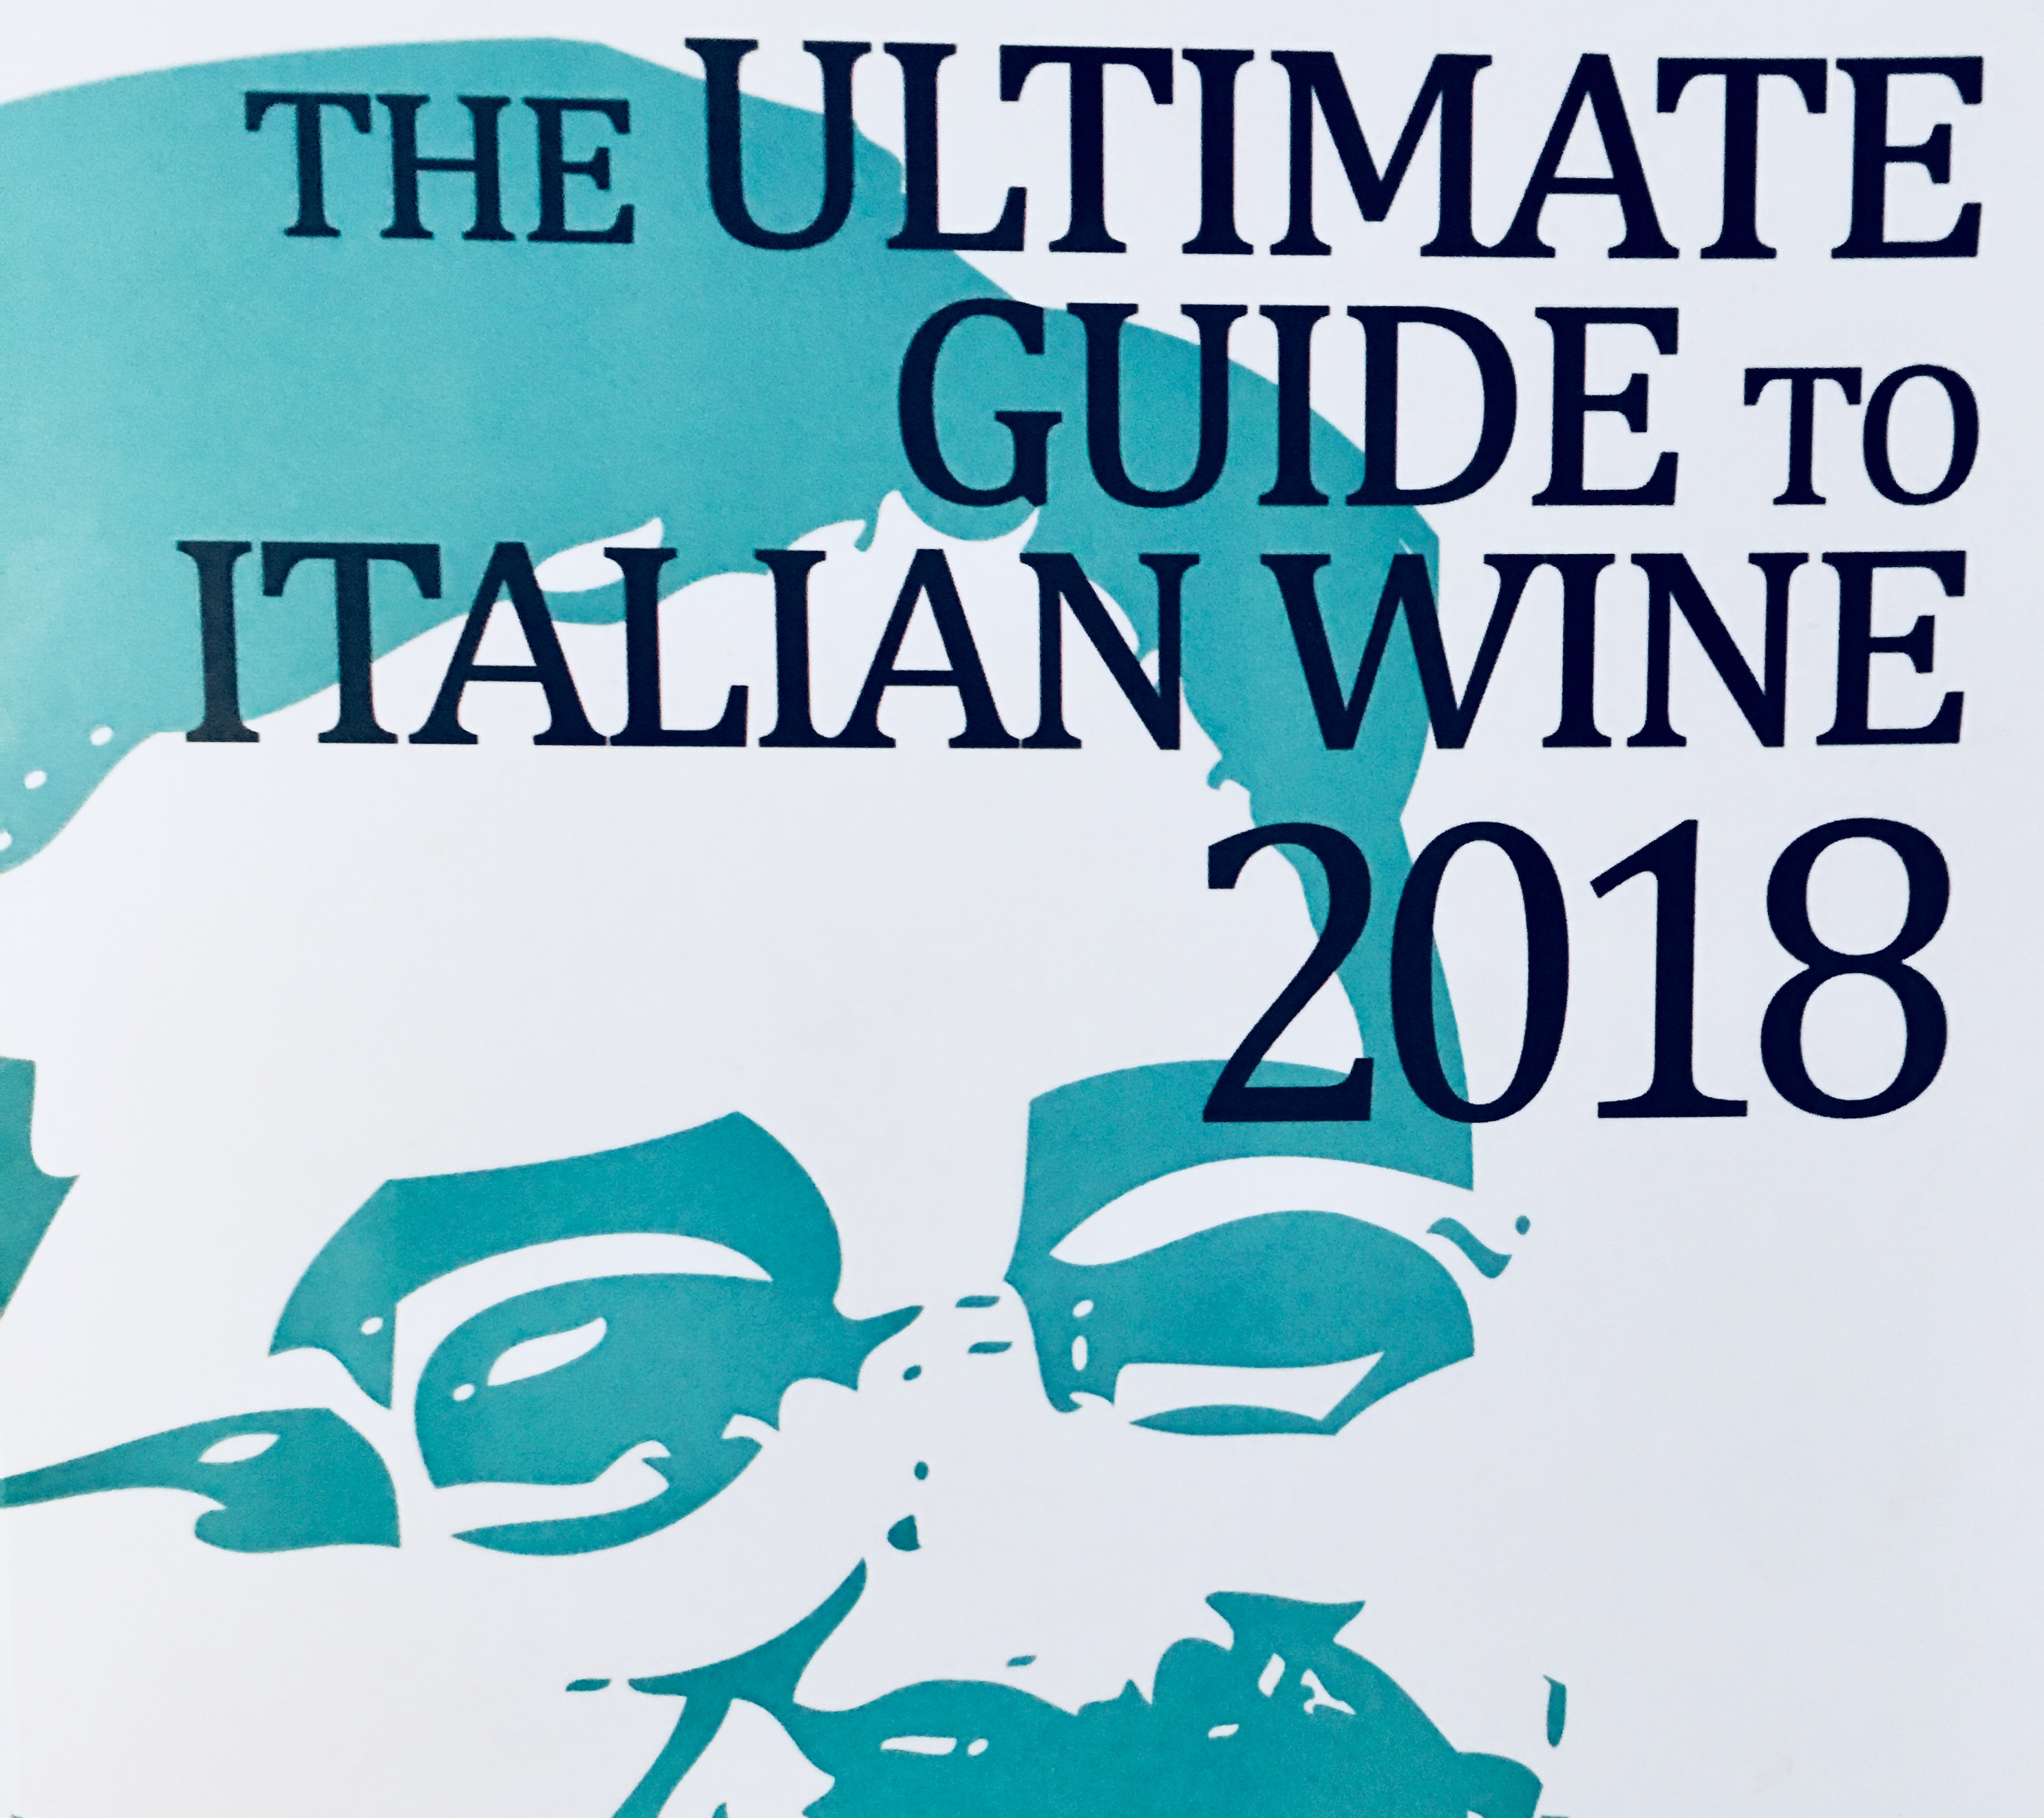 Guide du vin italien 2018 - Lancement de Daniele Cernilli.